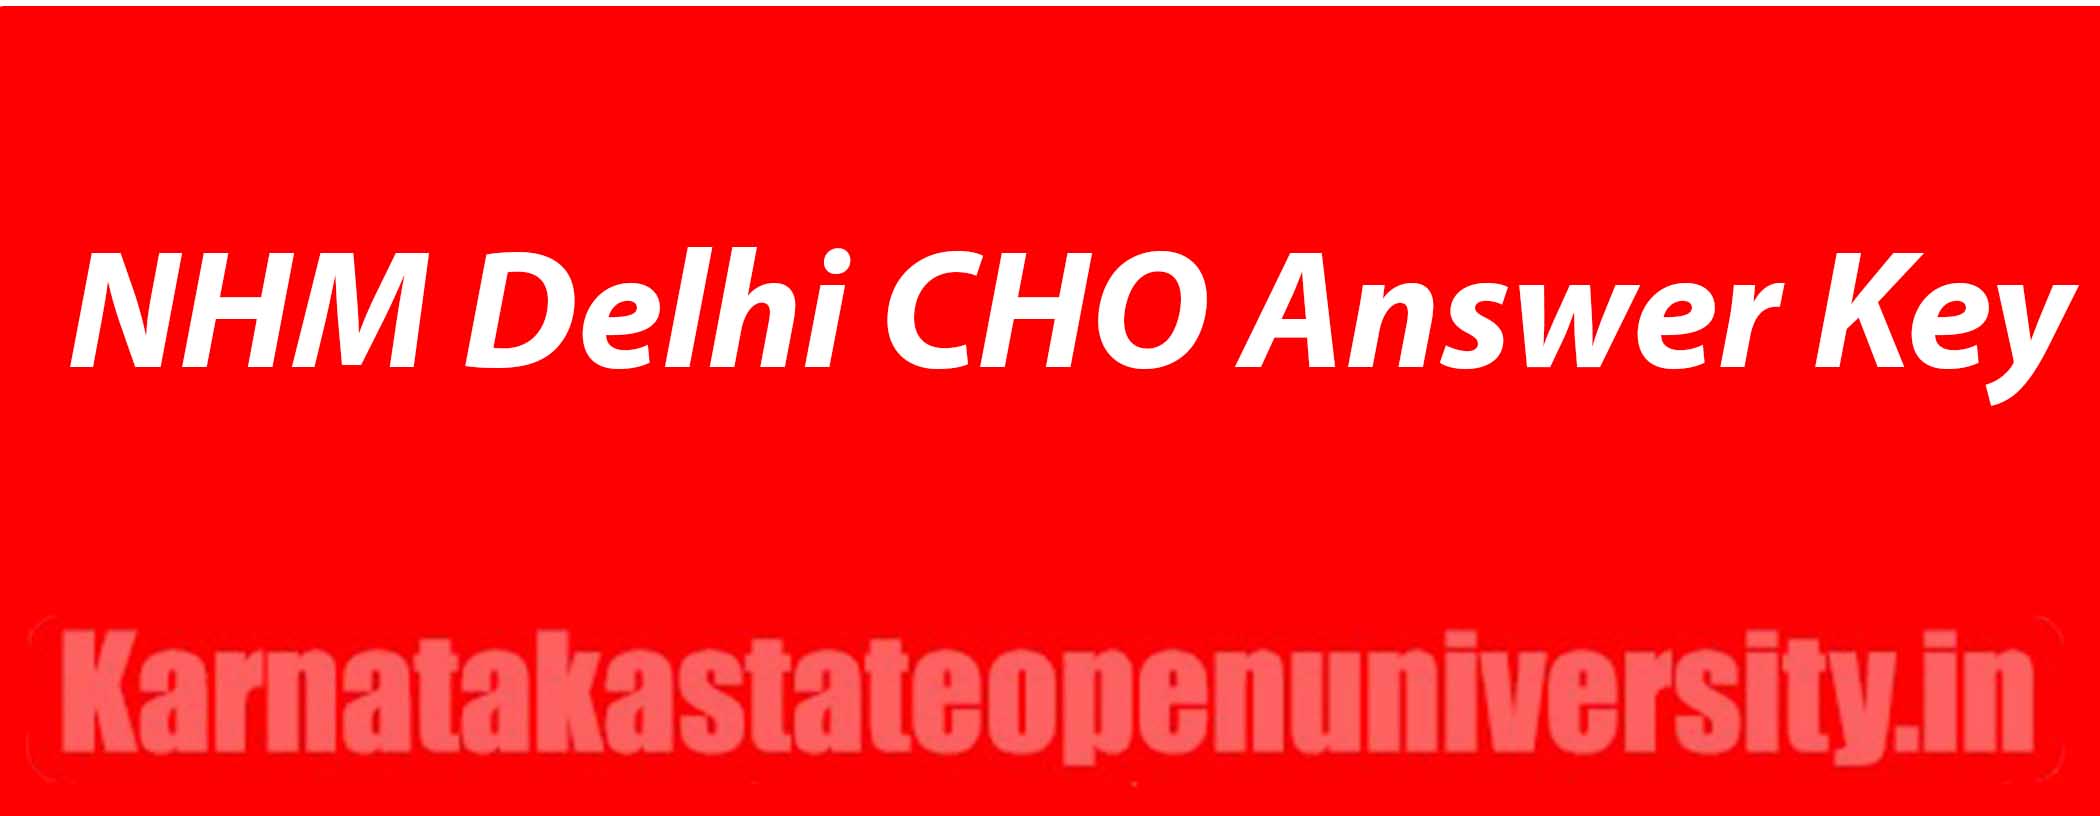 NHM Delhi CHO Answer Key